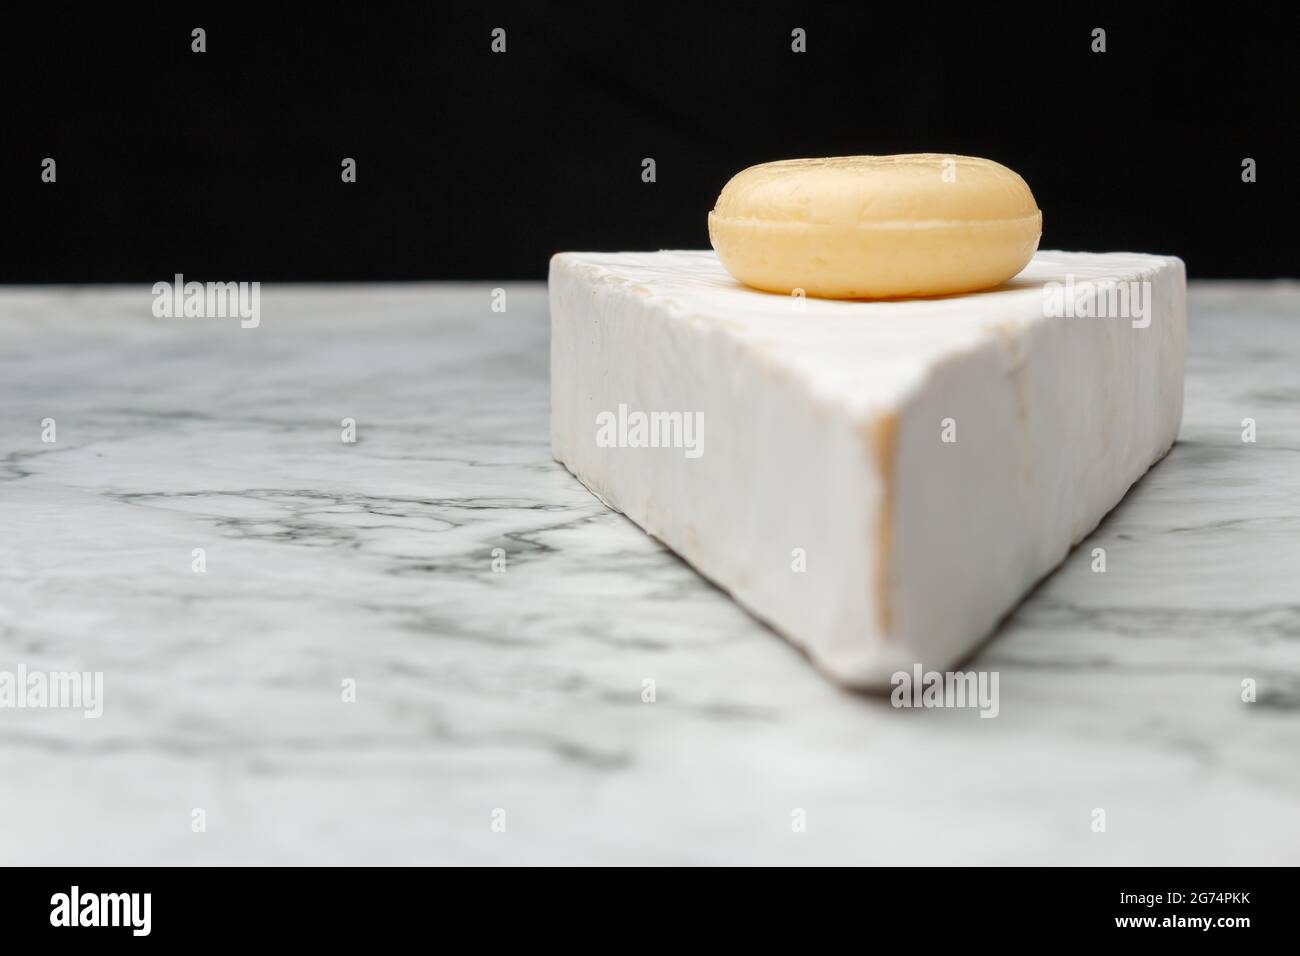 Ein Nahaufnahme Bild von weißem Akawi-Käse mit rundem, kleinen Käse darauf auf einer Marmoroberfläche Stockfoto